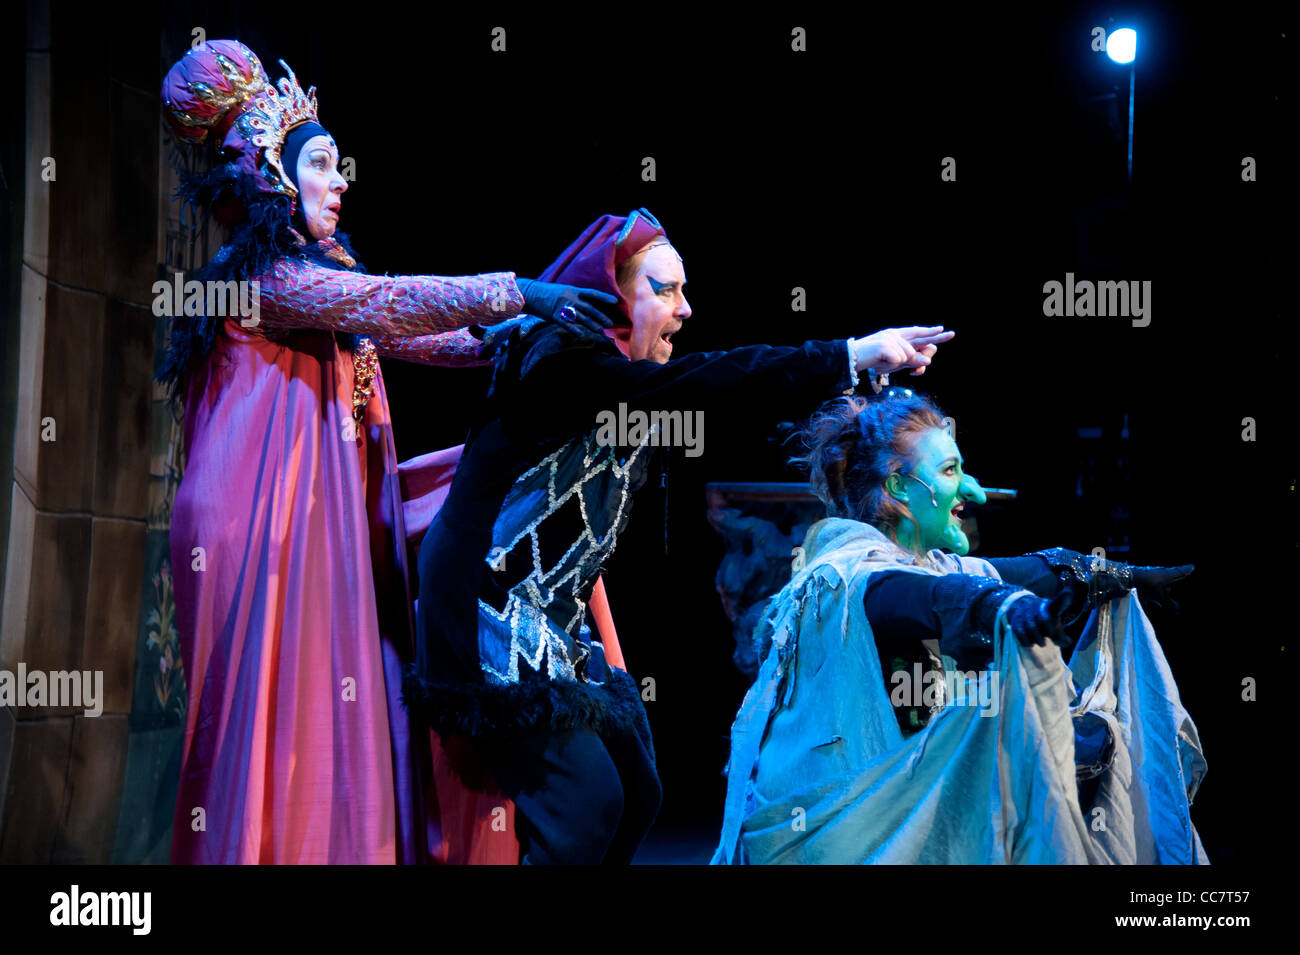 Drei "bösen" Charaktere in einer Amateur-Theater-Pantomime-Version der Legende von Robin Hood, Aberystwyth Arts Centre Wales UK Stockfoto